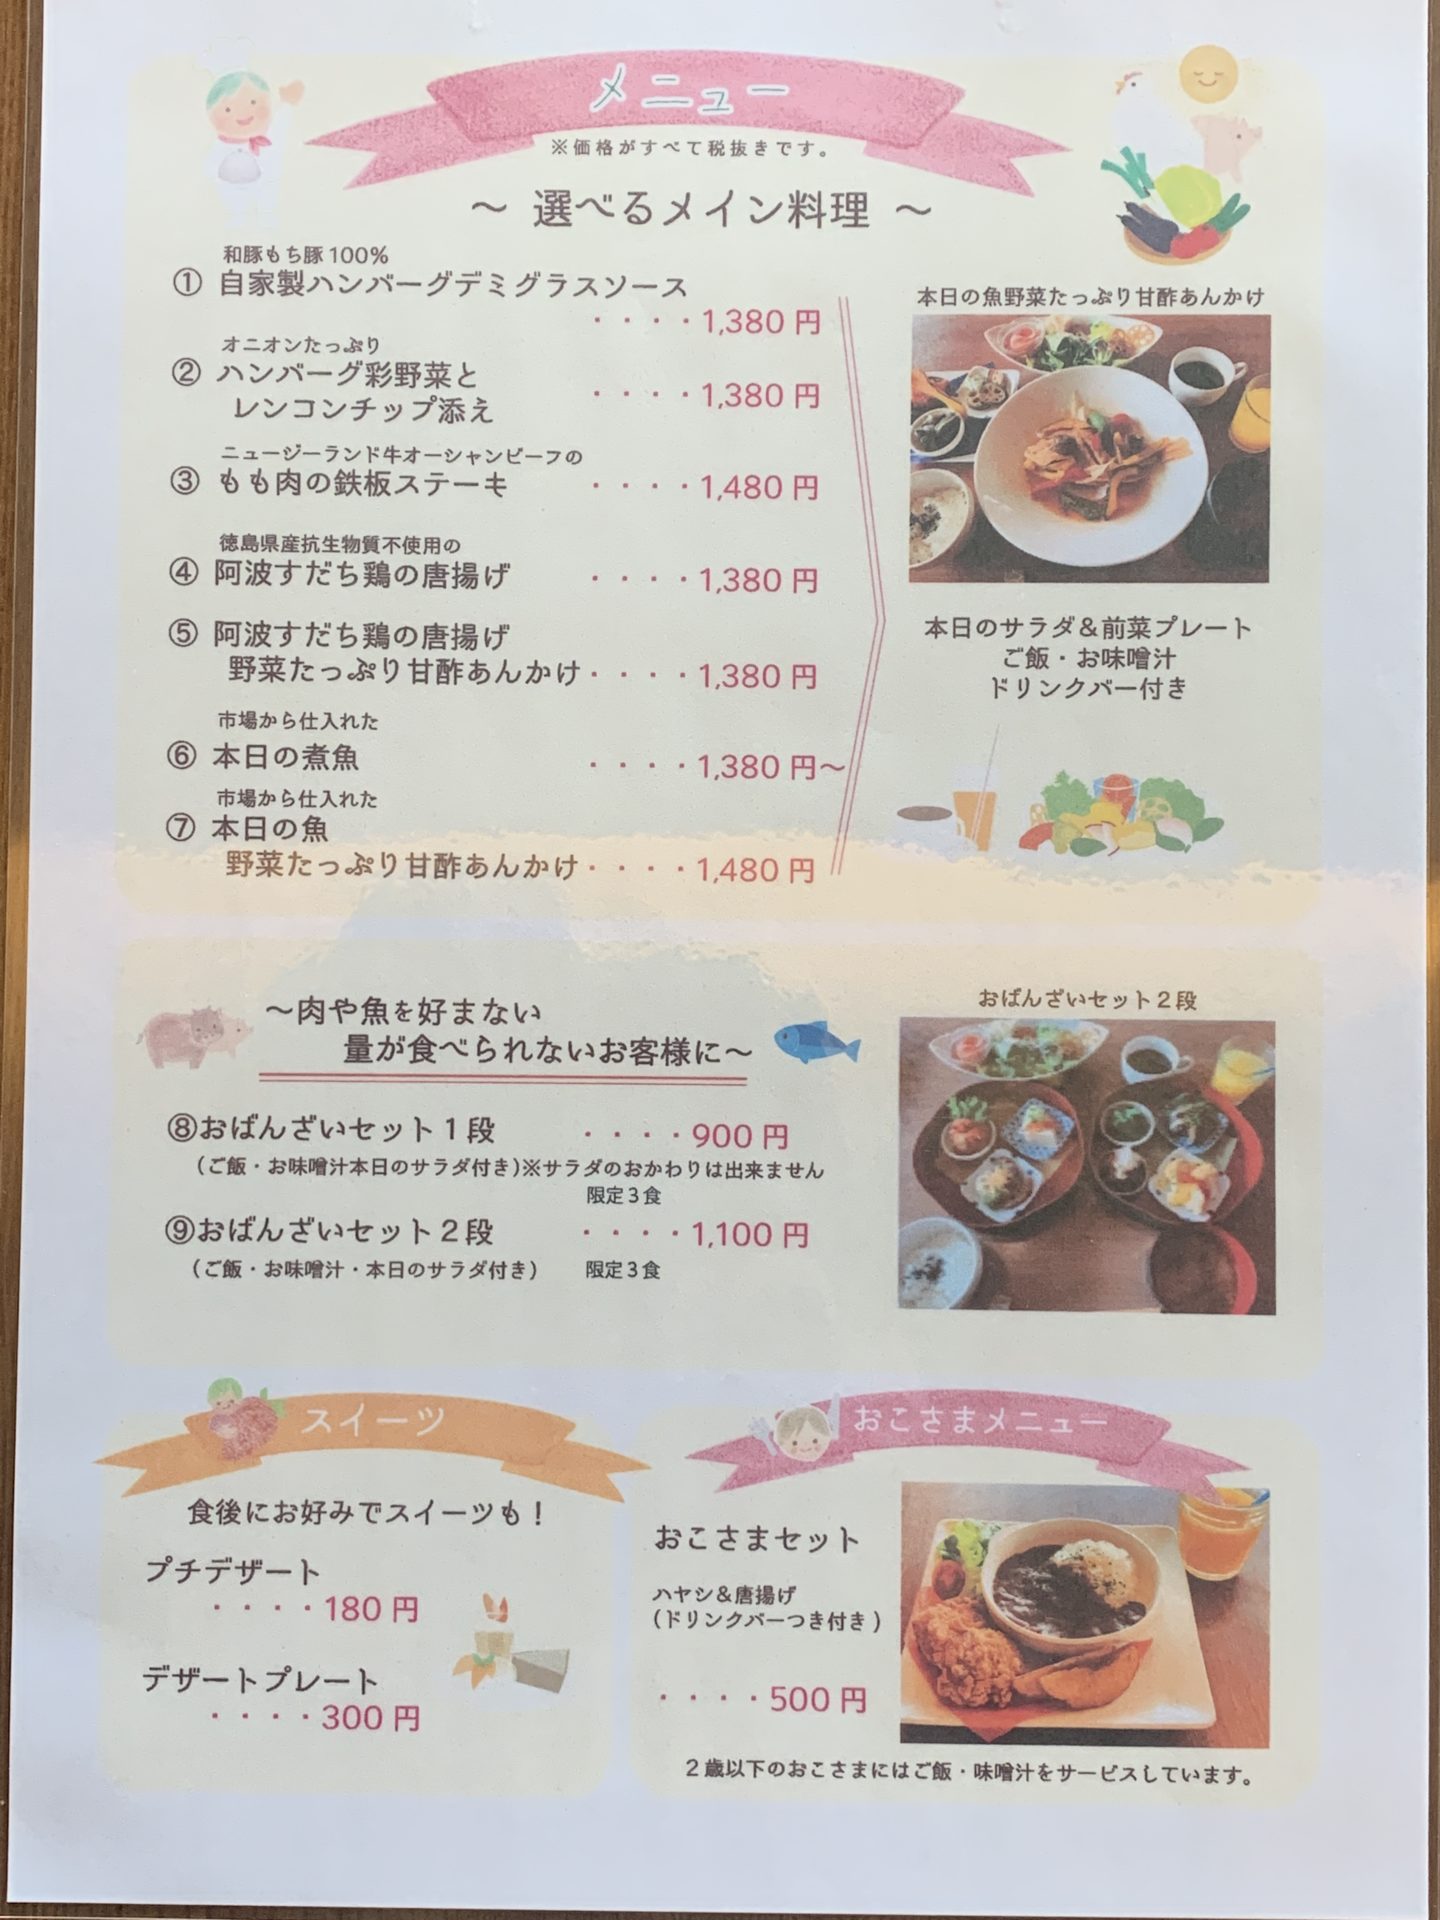 ほがらか若草店 3月の営業時間変更のお知らせ 豊田市 自然派レストランほがらかの 今日もほがらかにいこう